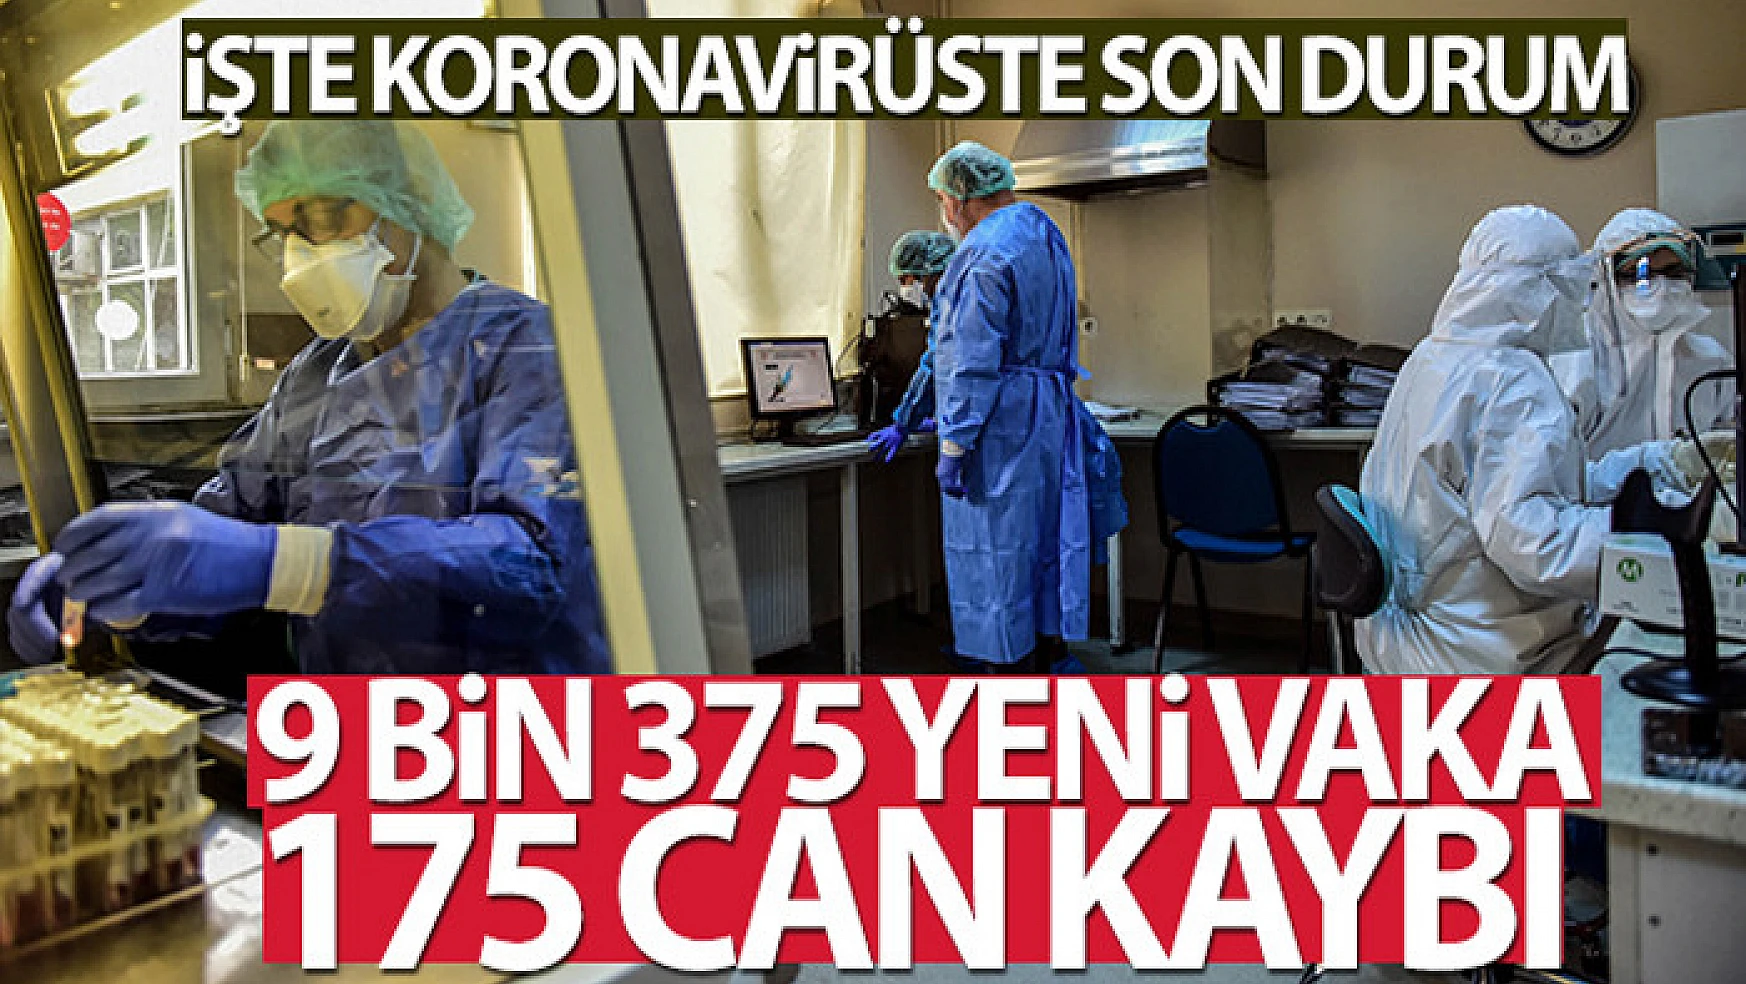 Türkiye'de son 24 saatte 9.375 koronavirüs vakası tespit edildi